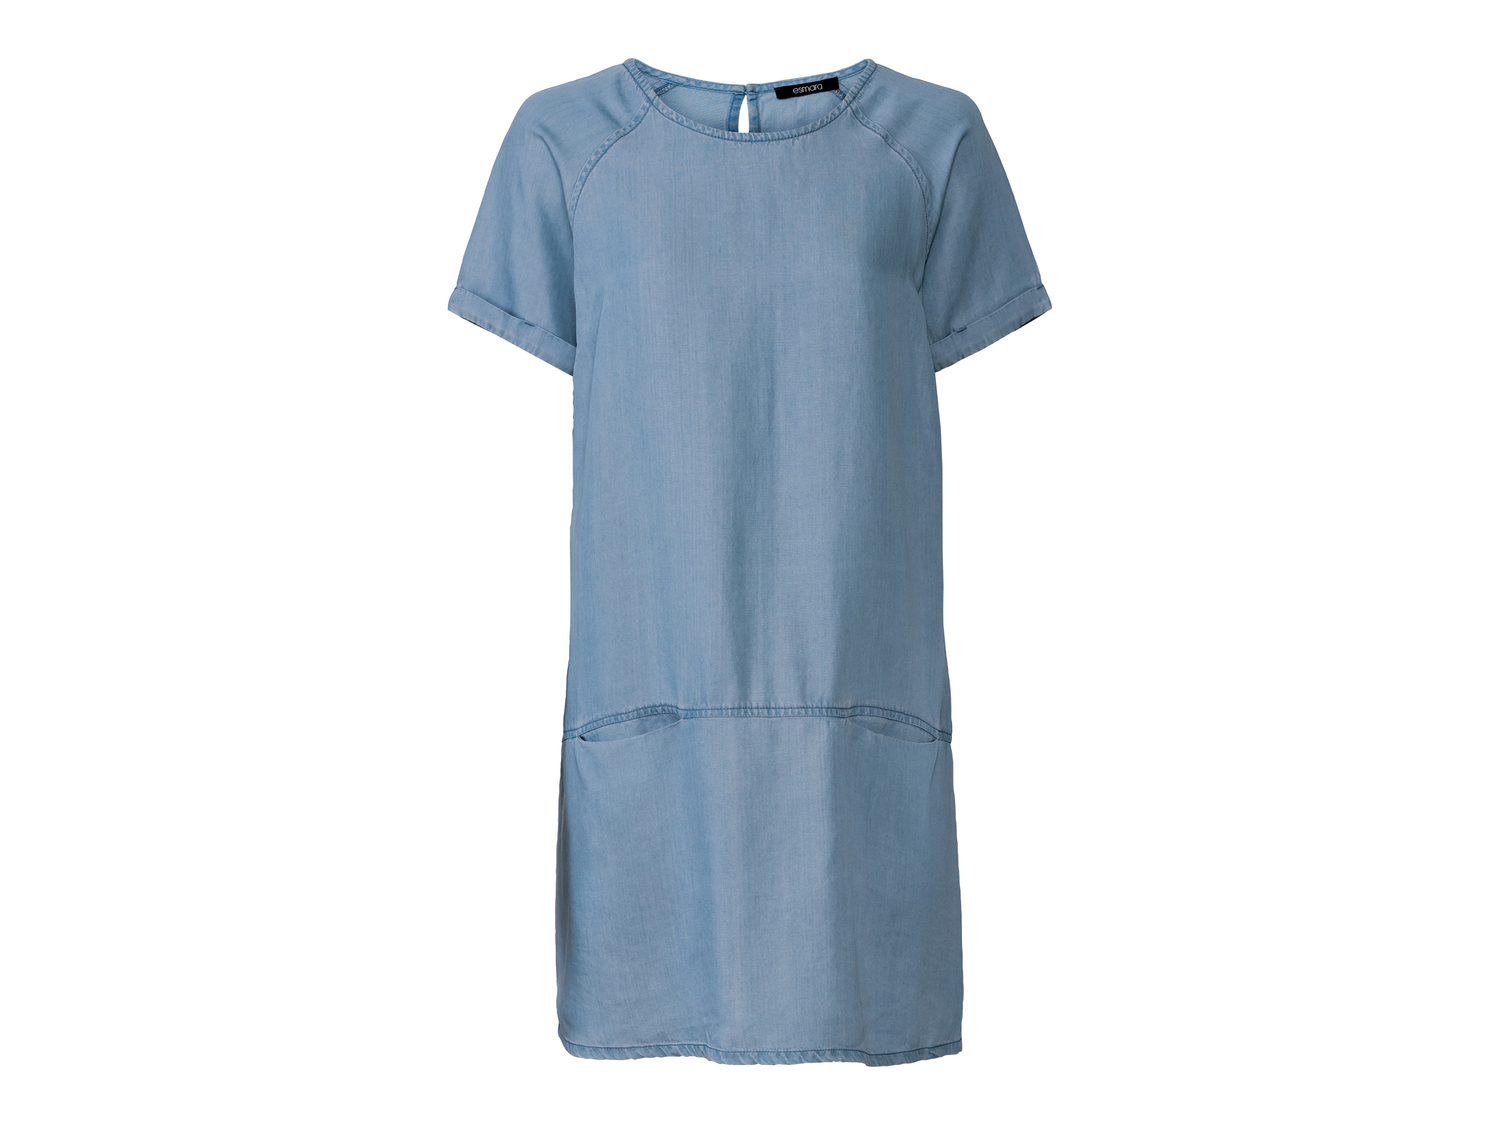 Vestito corto da donna Esmara, prezzo 9.99 &#8364; 
Misure: 38-46
Taglie disponibili

Caratteristiche

- ...